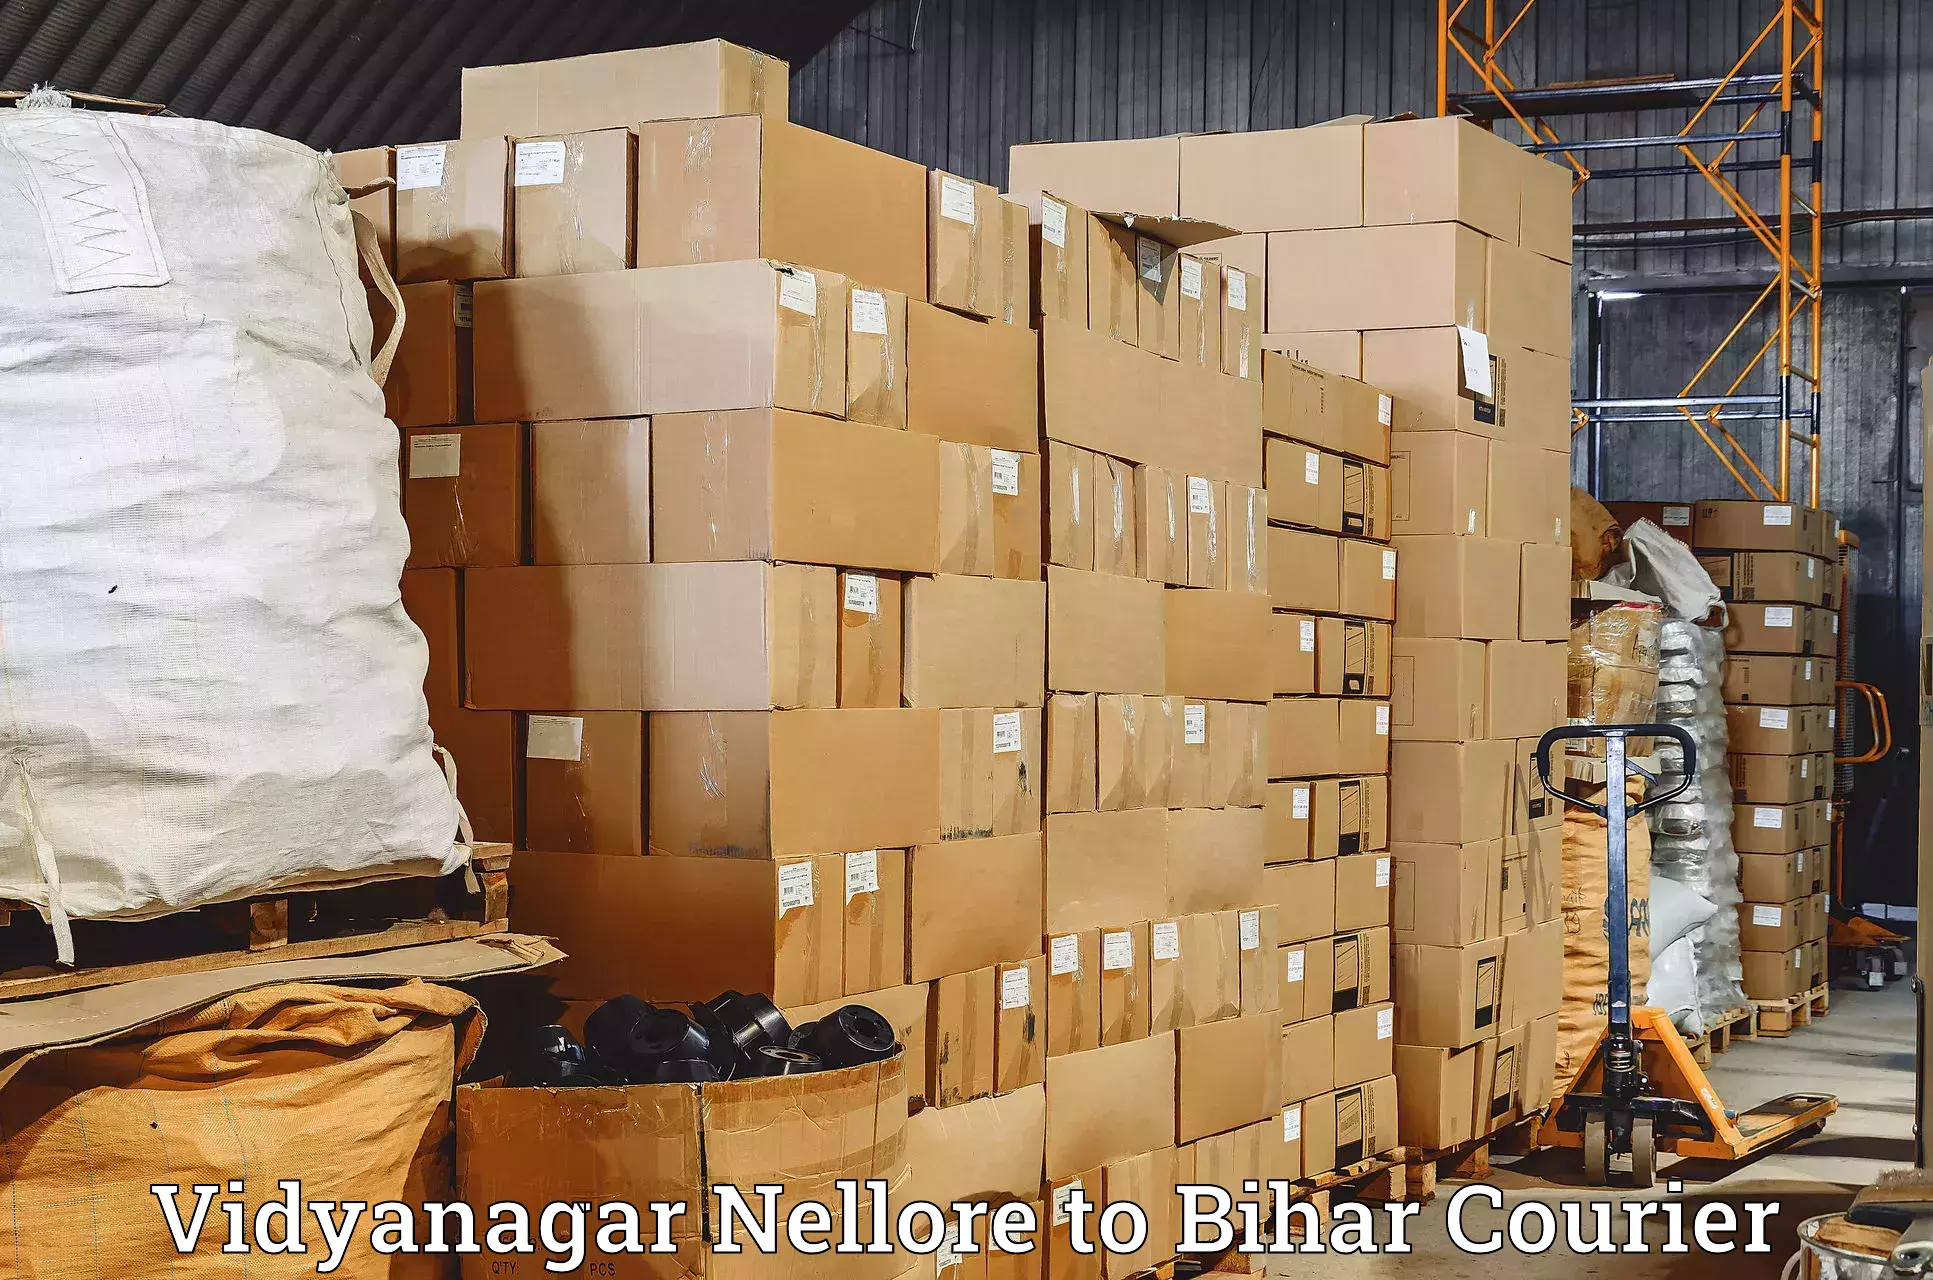 High-speed parcel service Vidyanagar Nellore to Bihar